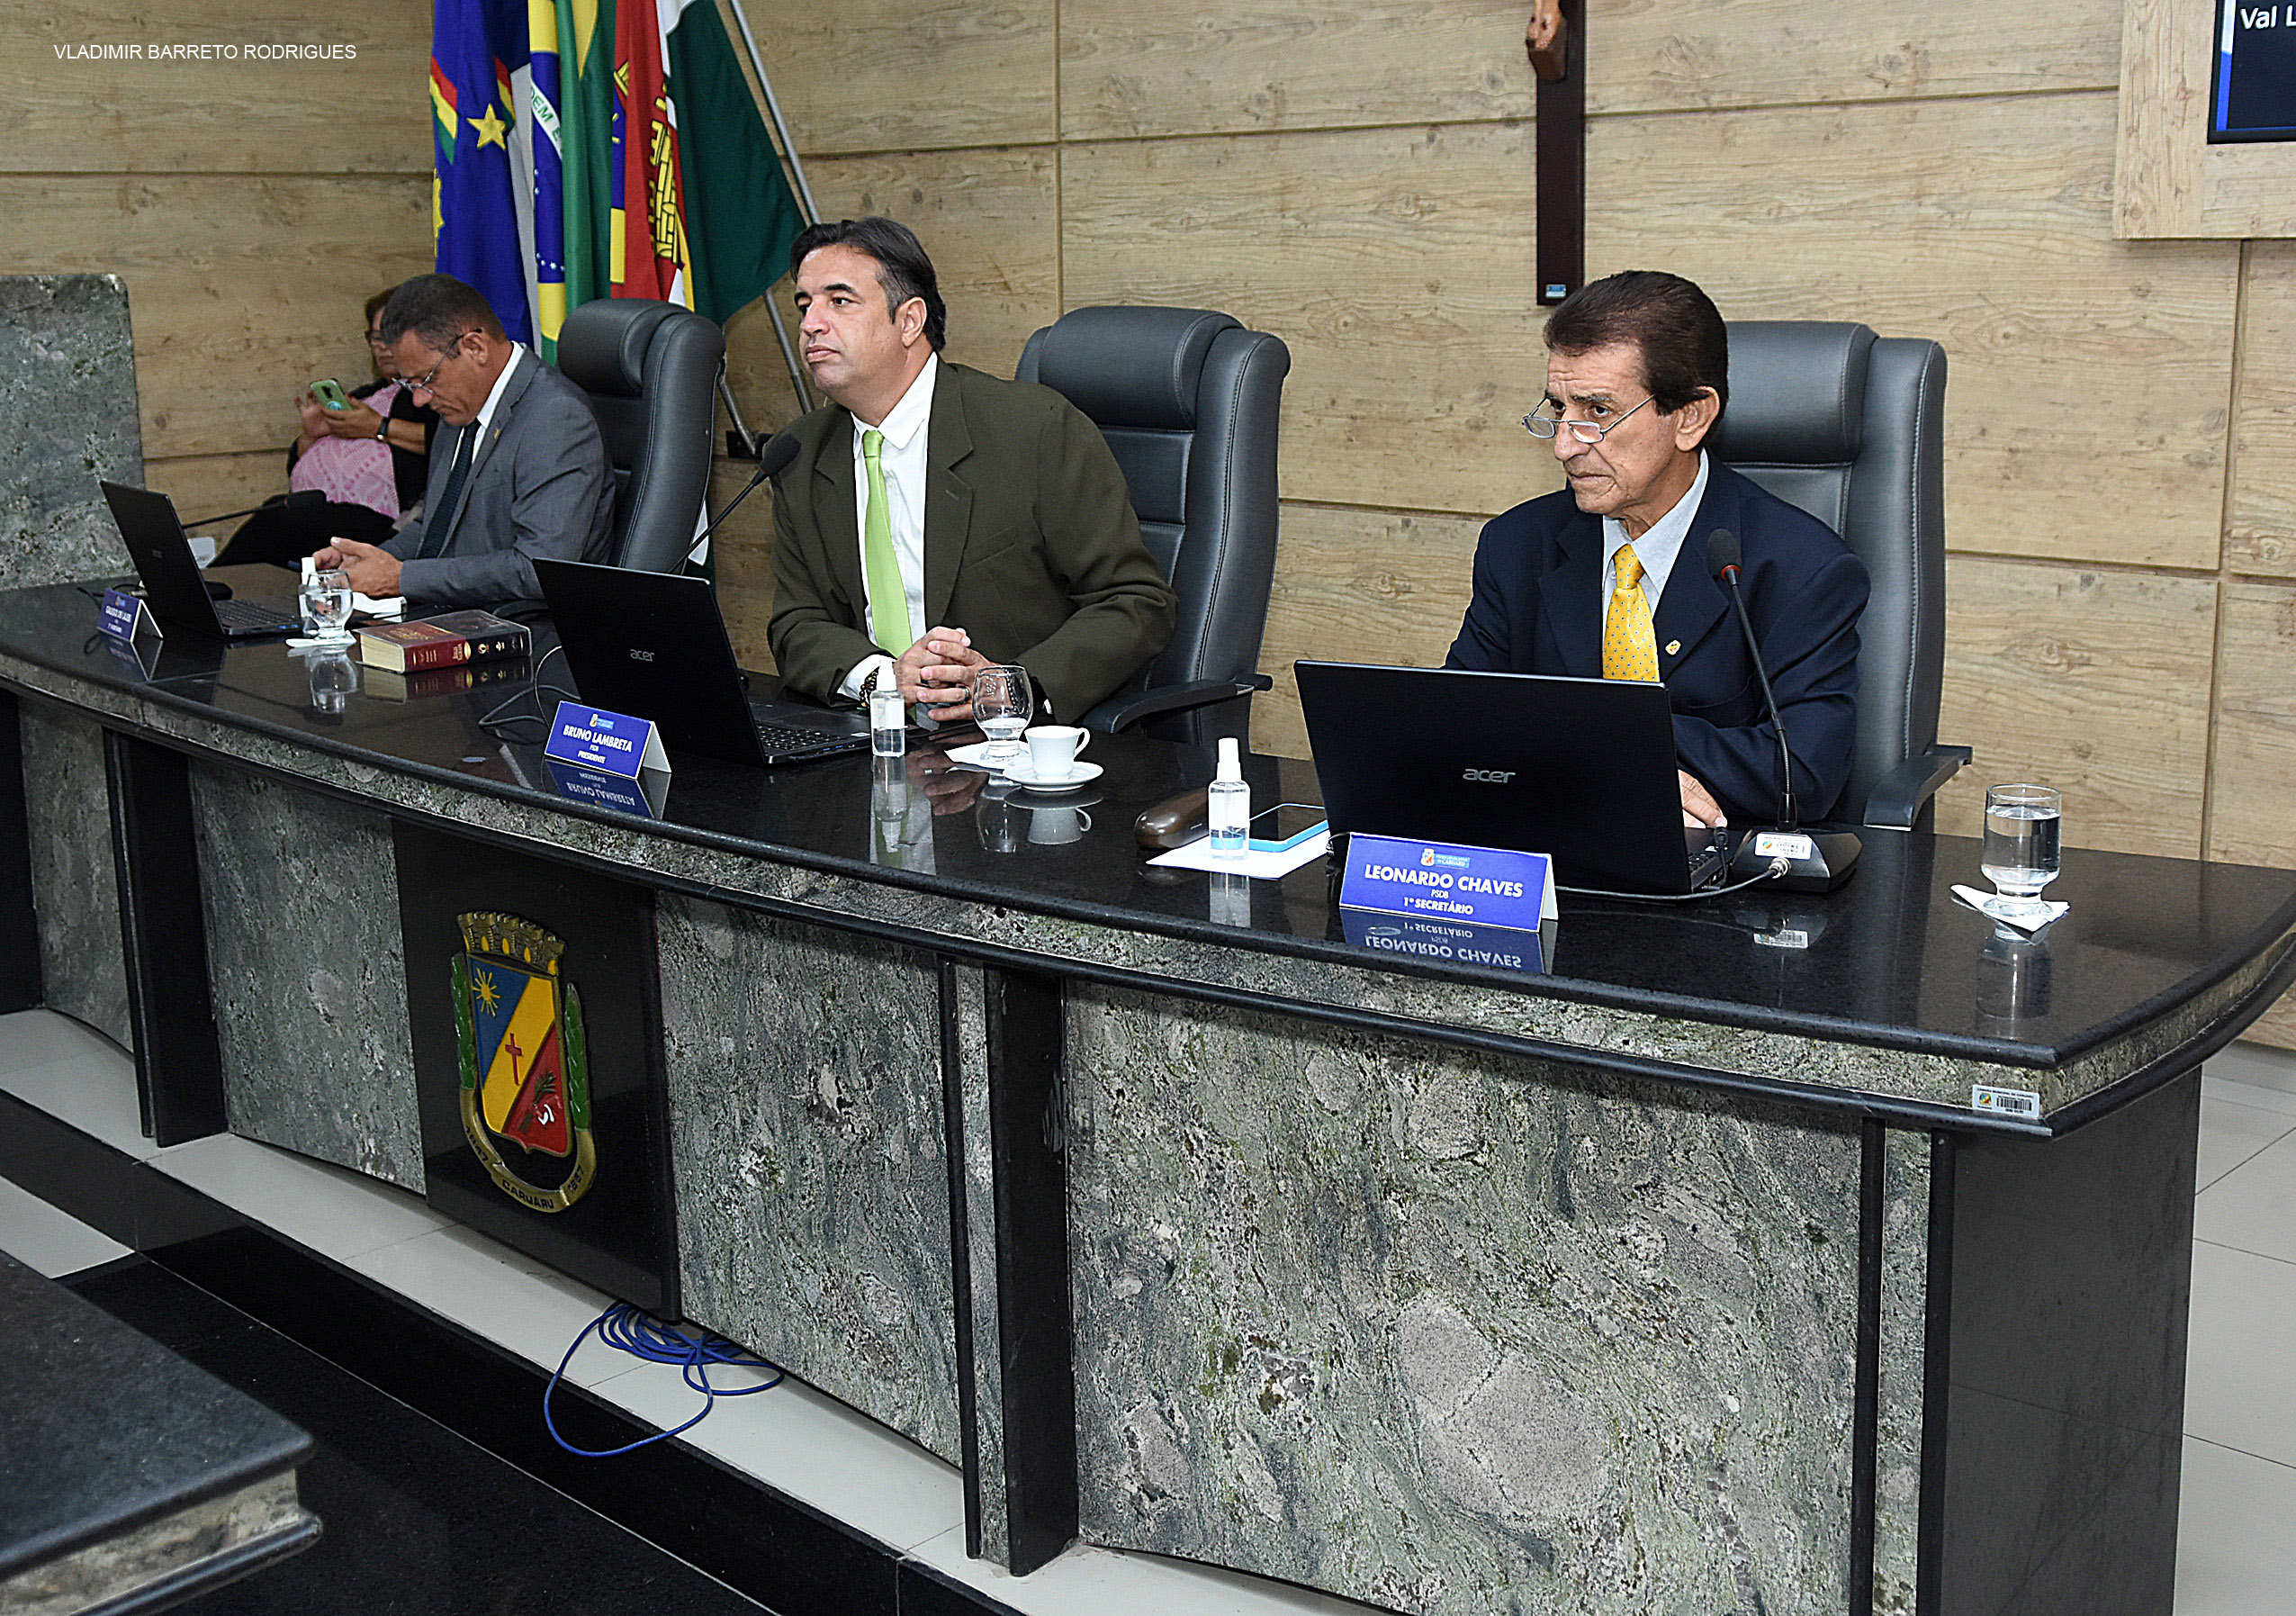 “Presidente da Câmara de Vereadores de Caruaru Propõe Medidas para Reforçar Segurança no Trânsito da Rua do Vassoural”